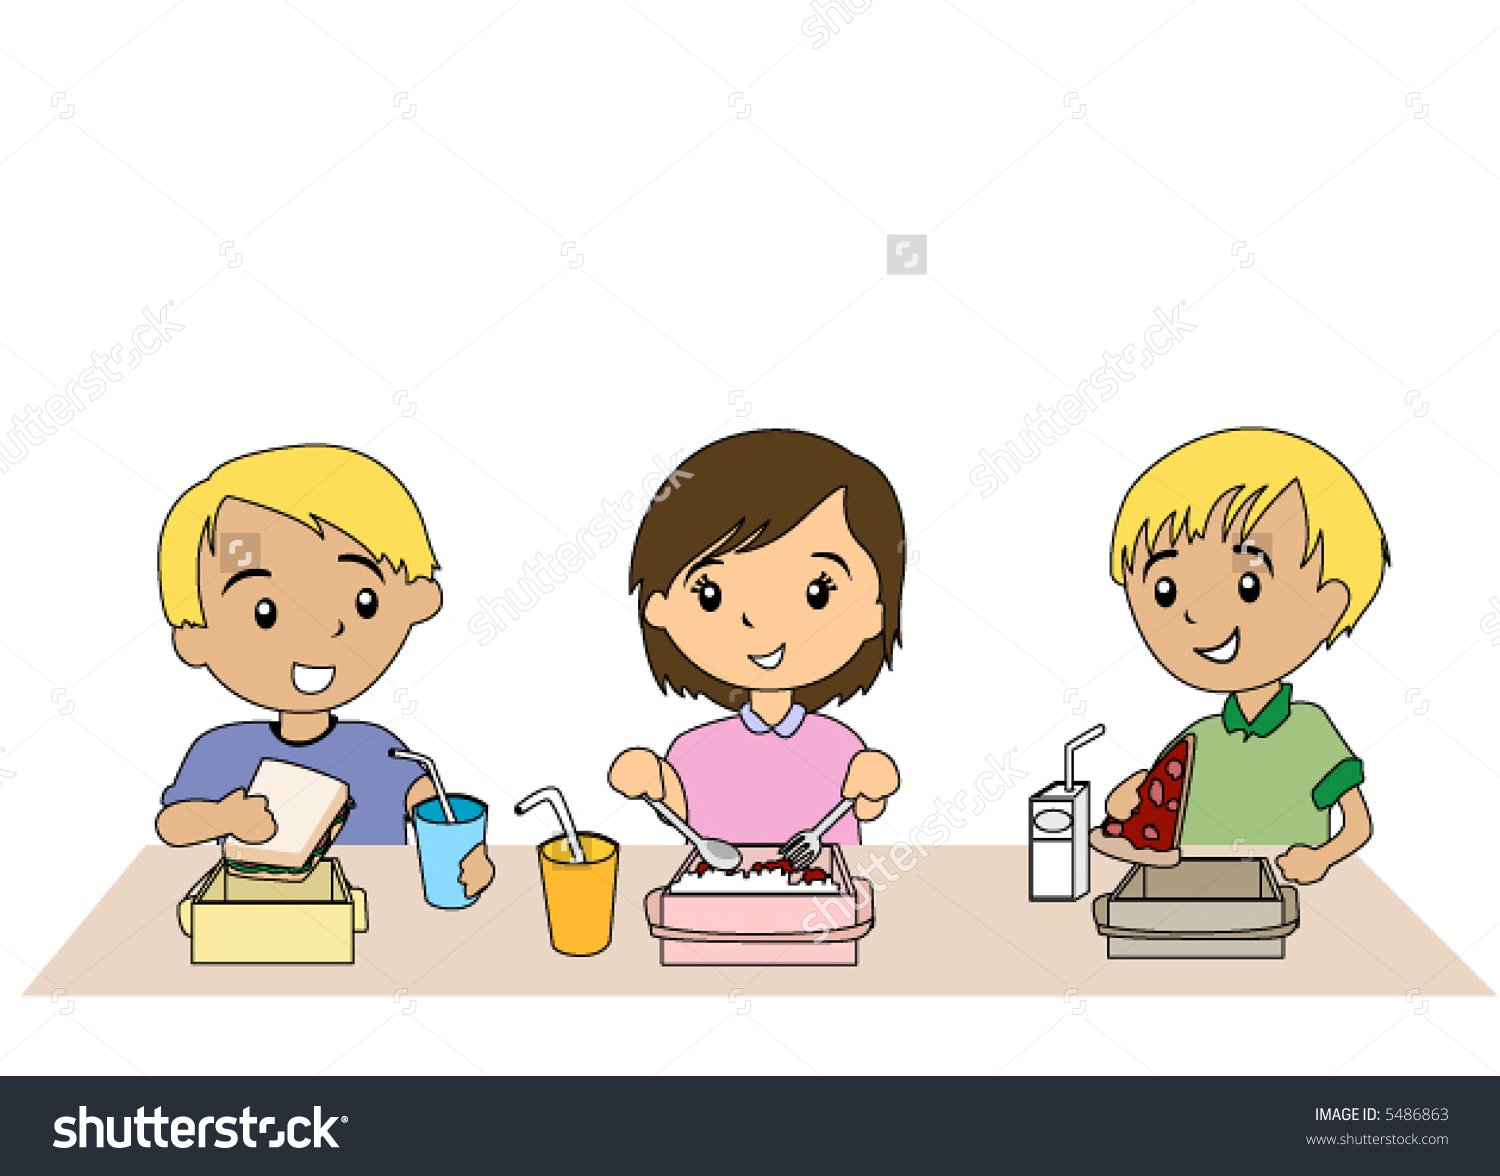 Дети едят в столовой иллюстрация. Рисунок за столом в школьном буфете. Дети за столом картинки для детей. Обед в школе.